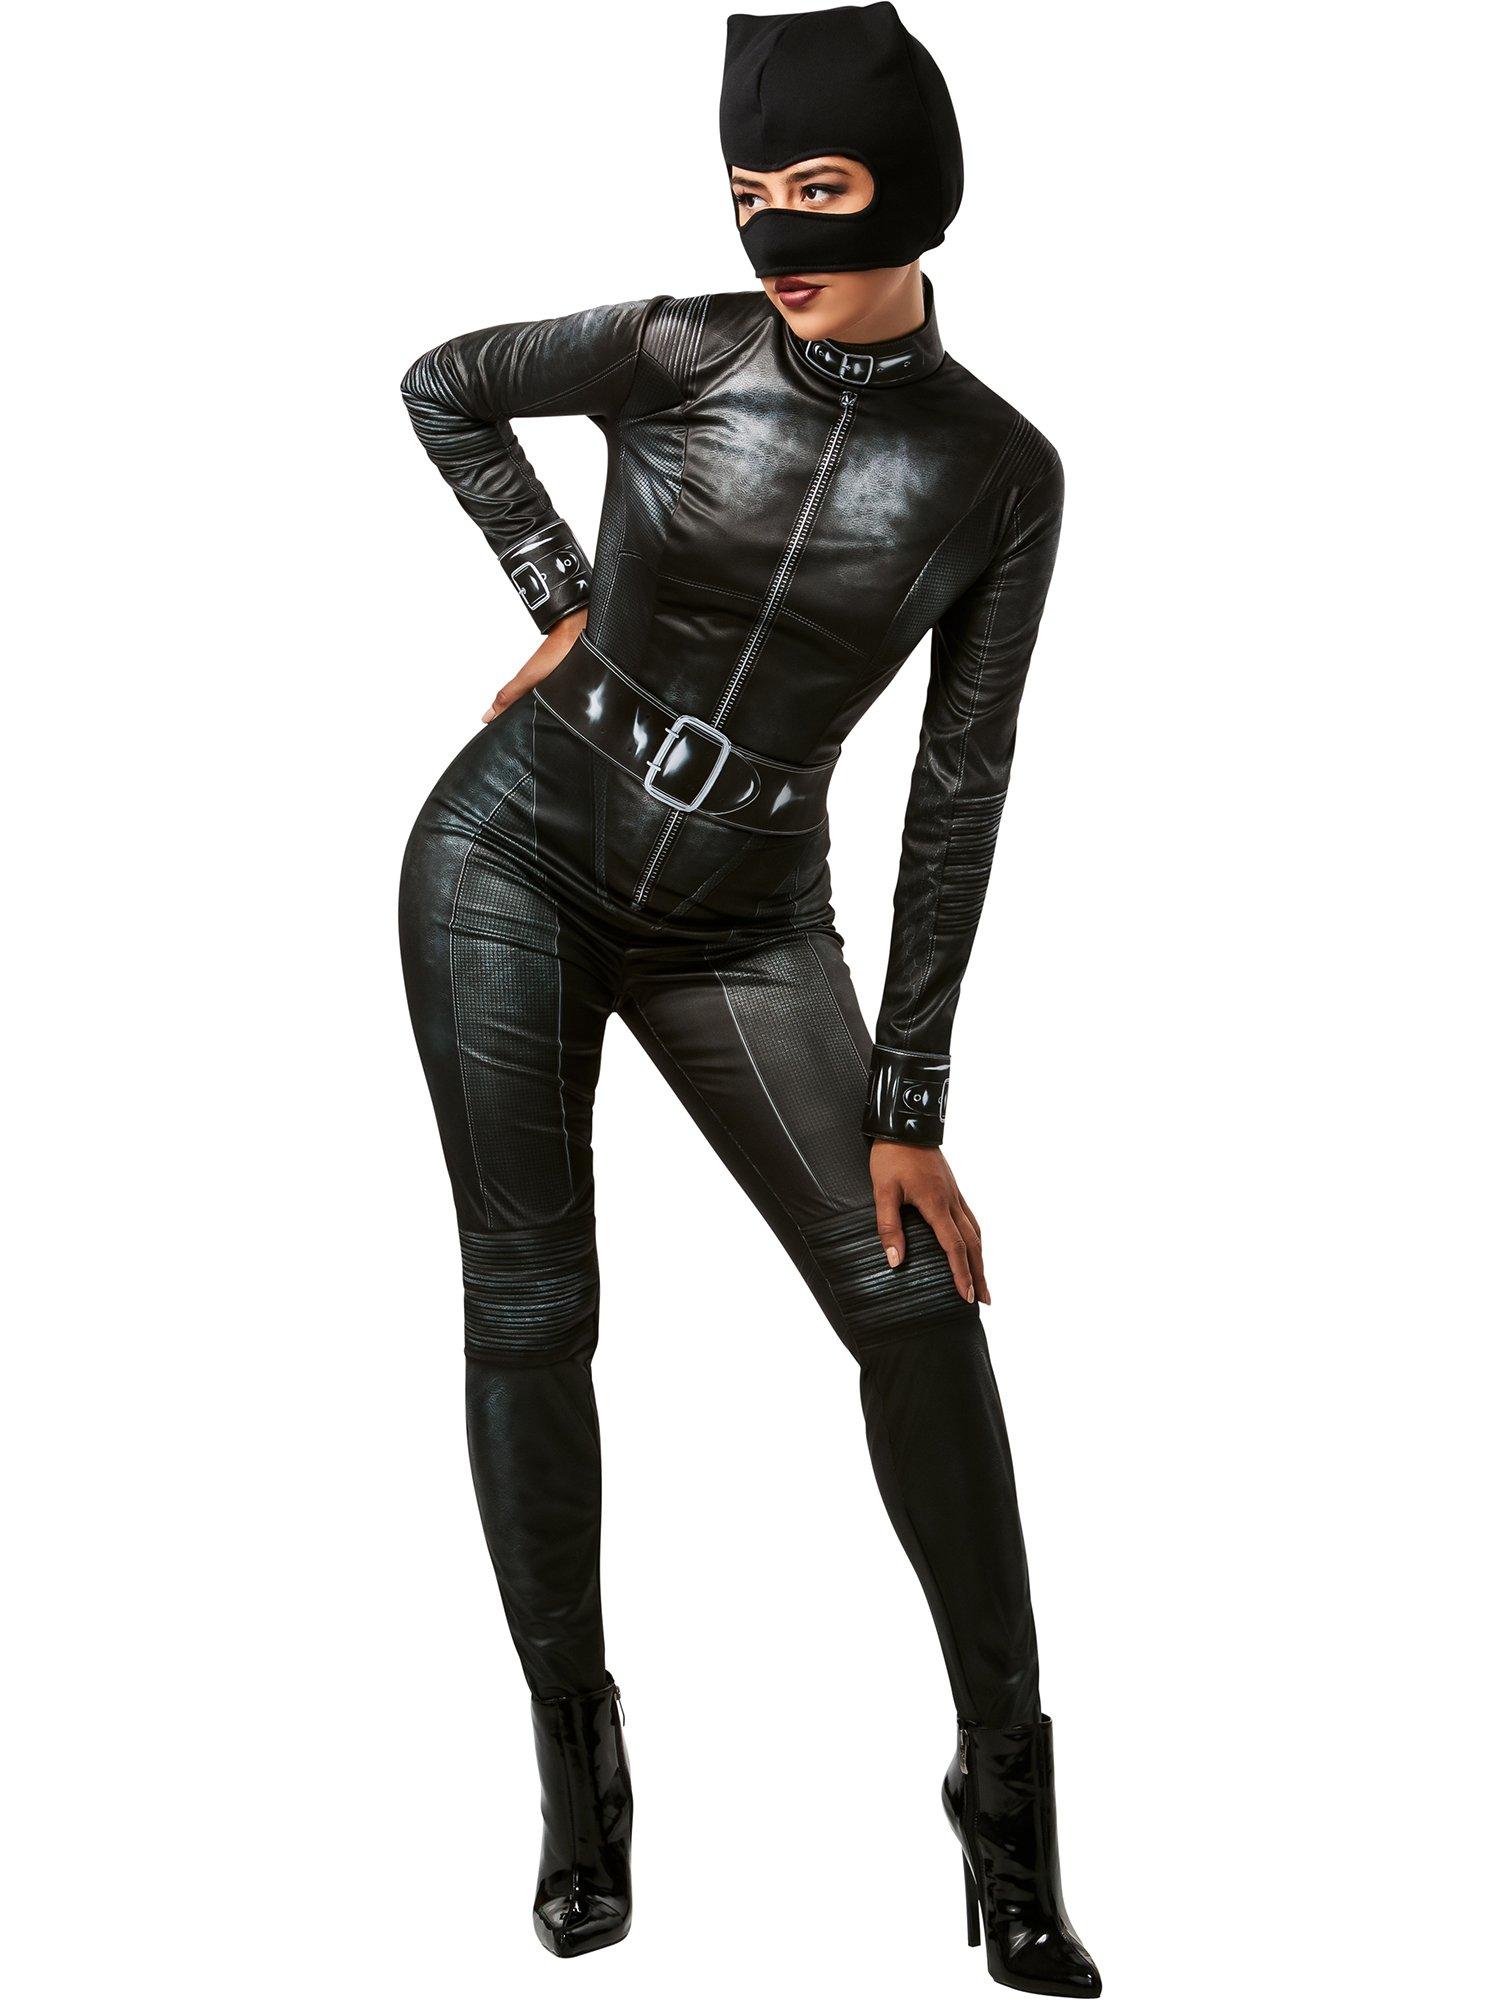 https://media.gamestop.com/i/gamestop/20001001/DC-Comics-The-Batman-Catwoman-Adult-Costume